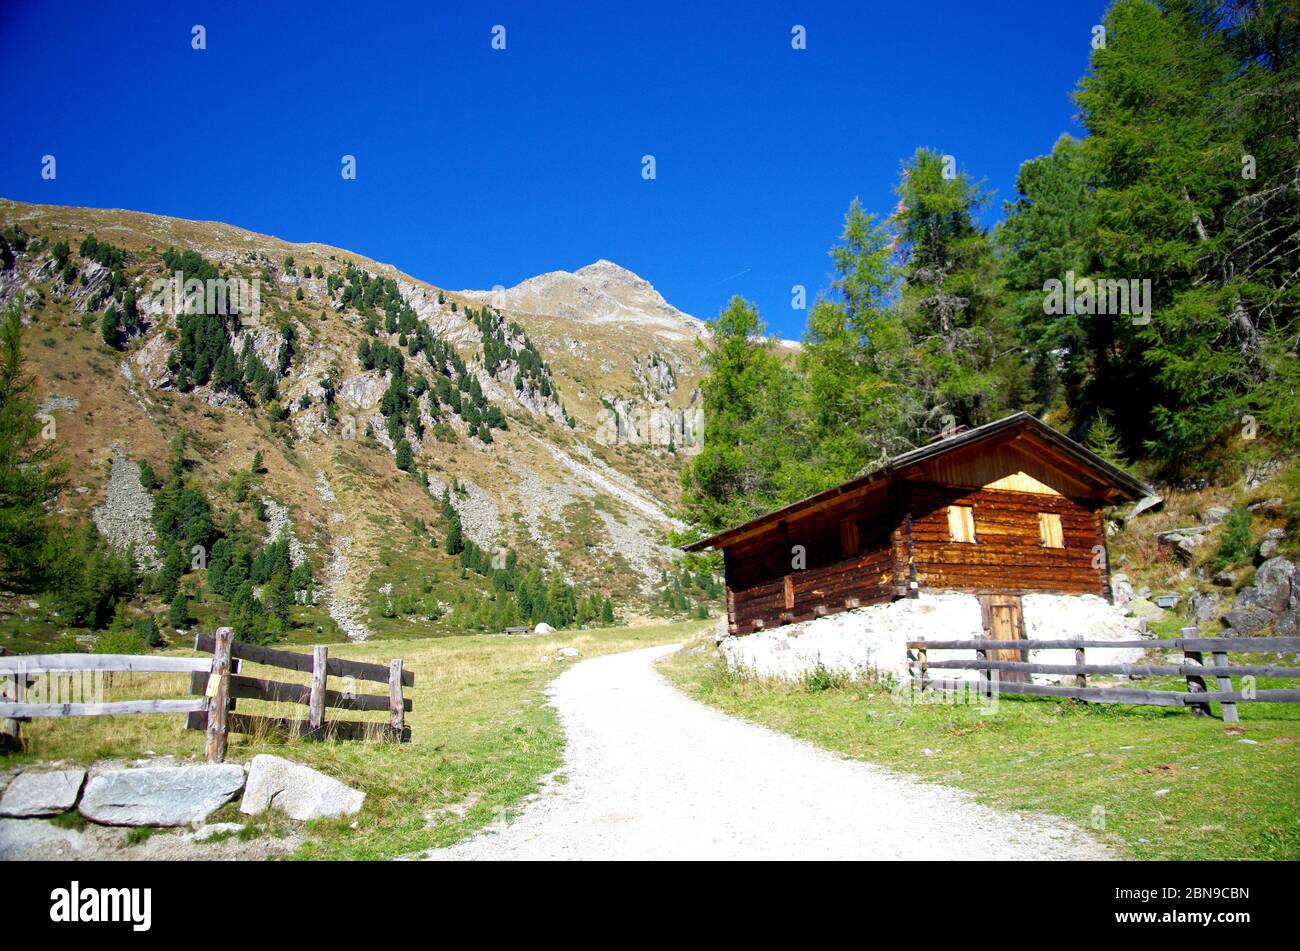 Hoher Berg mit grünen Wiesen und üppigen Wäldern und scharfen Felsen und typische Haus, Blockhaus, in Holz und Stein unter dem blauen Himmel Stockfoto